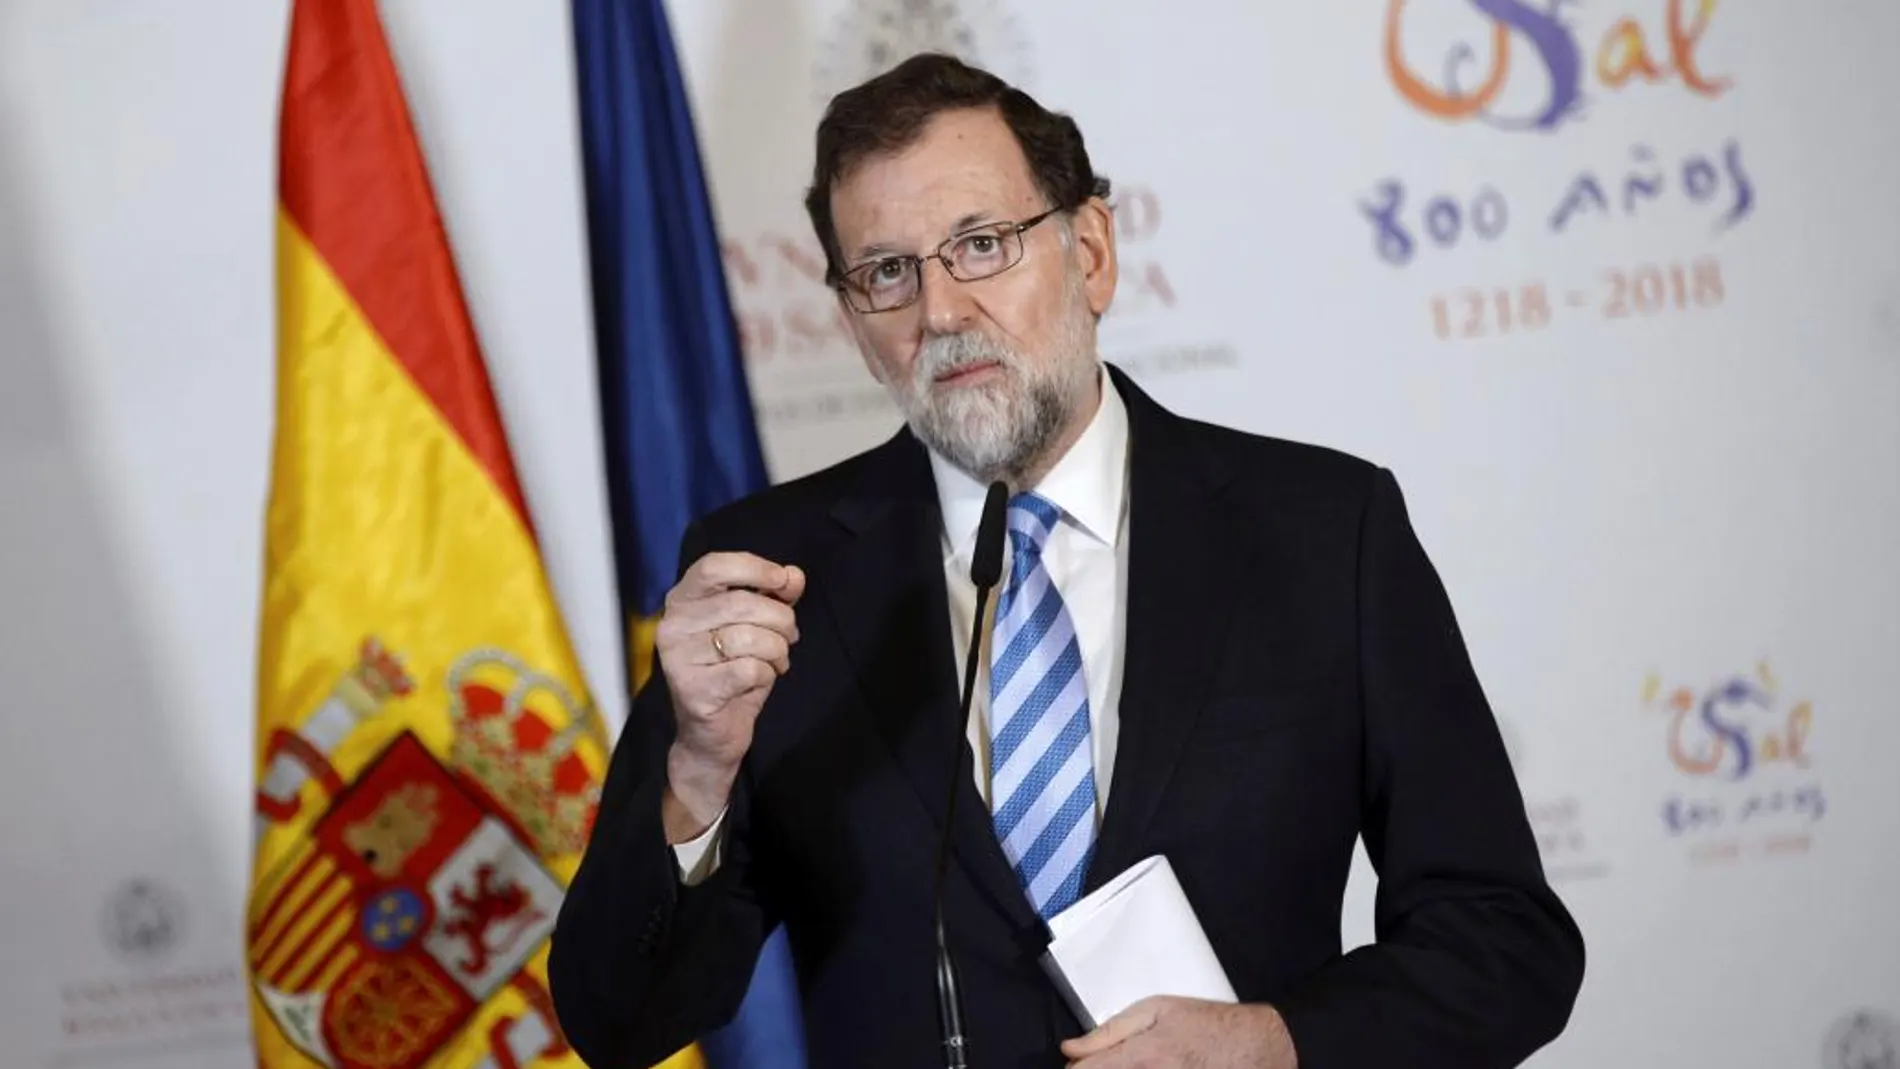 El presidente del Gobierno, Mariano Rajoy, antes de asistir en la Universidad de Salamanca al acto de investidura como doctor honoris causa del presidente de la Comisión Europea, Jean Claude Juncker. Efe